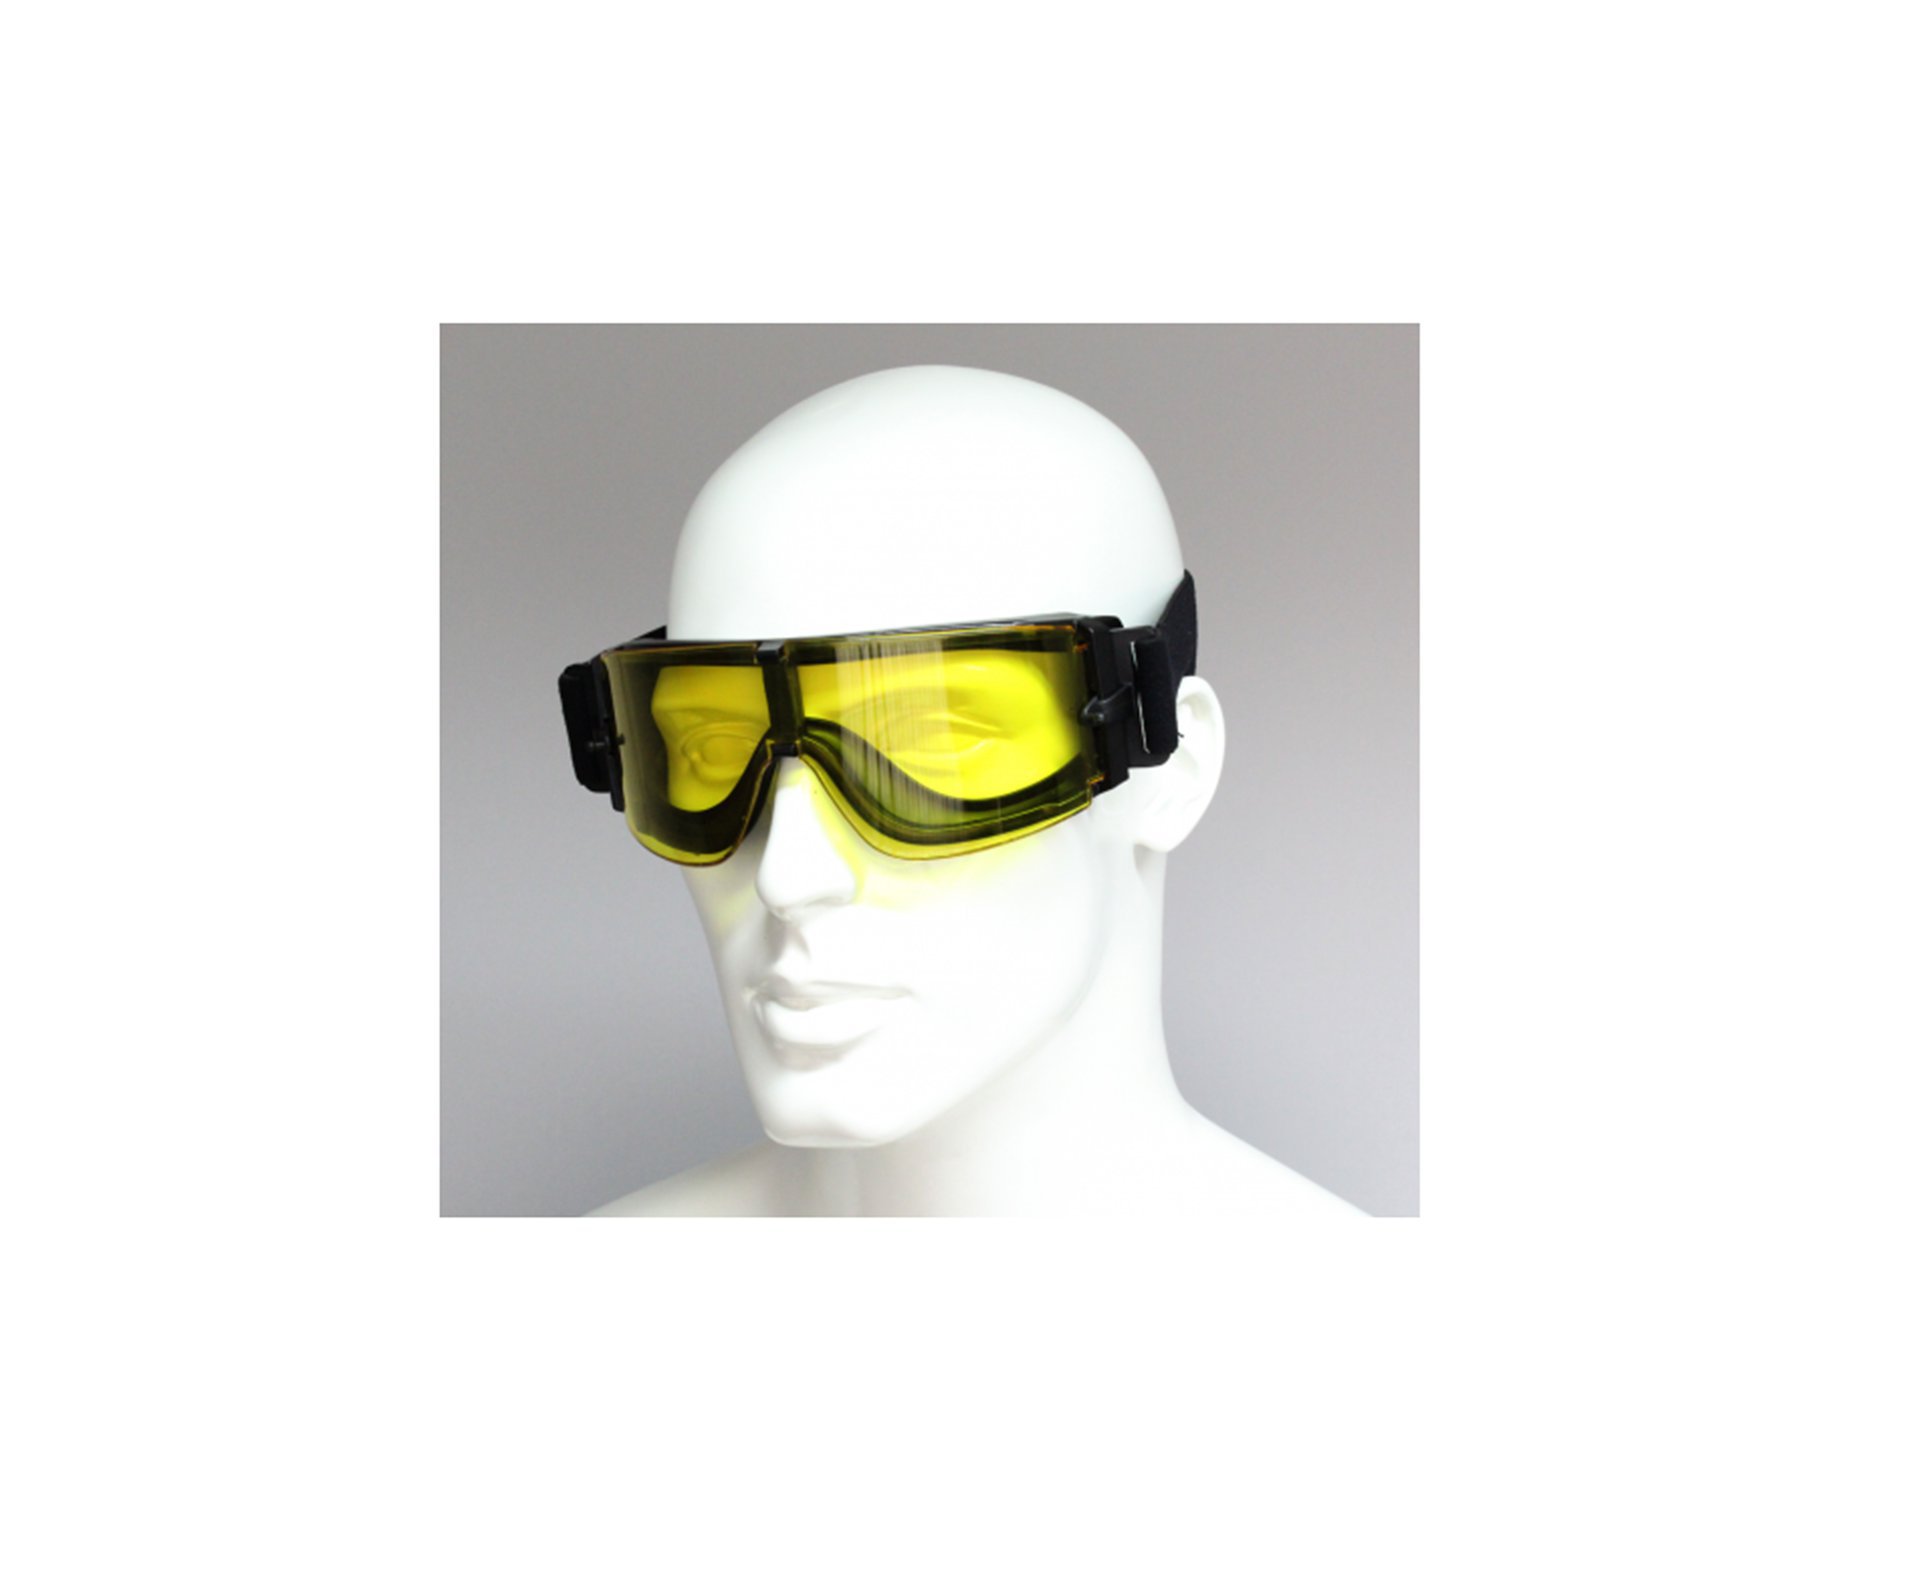 Mascara De Proteção Airsoft X800 Tripla Lente - Actionx